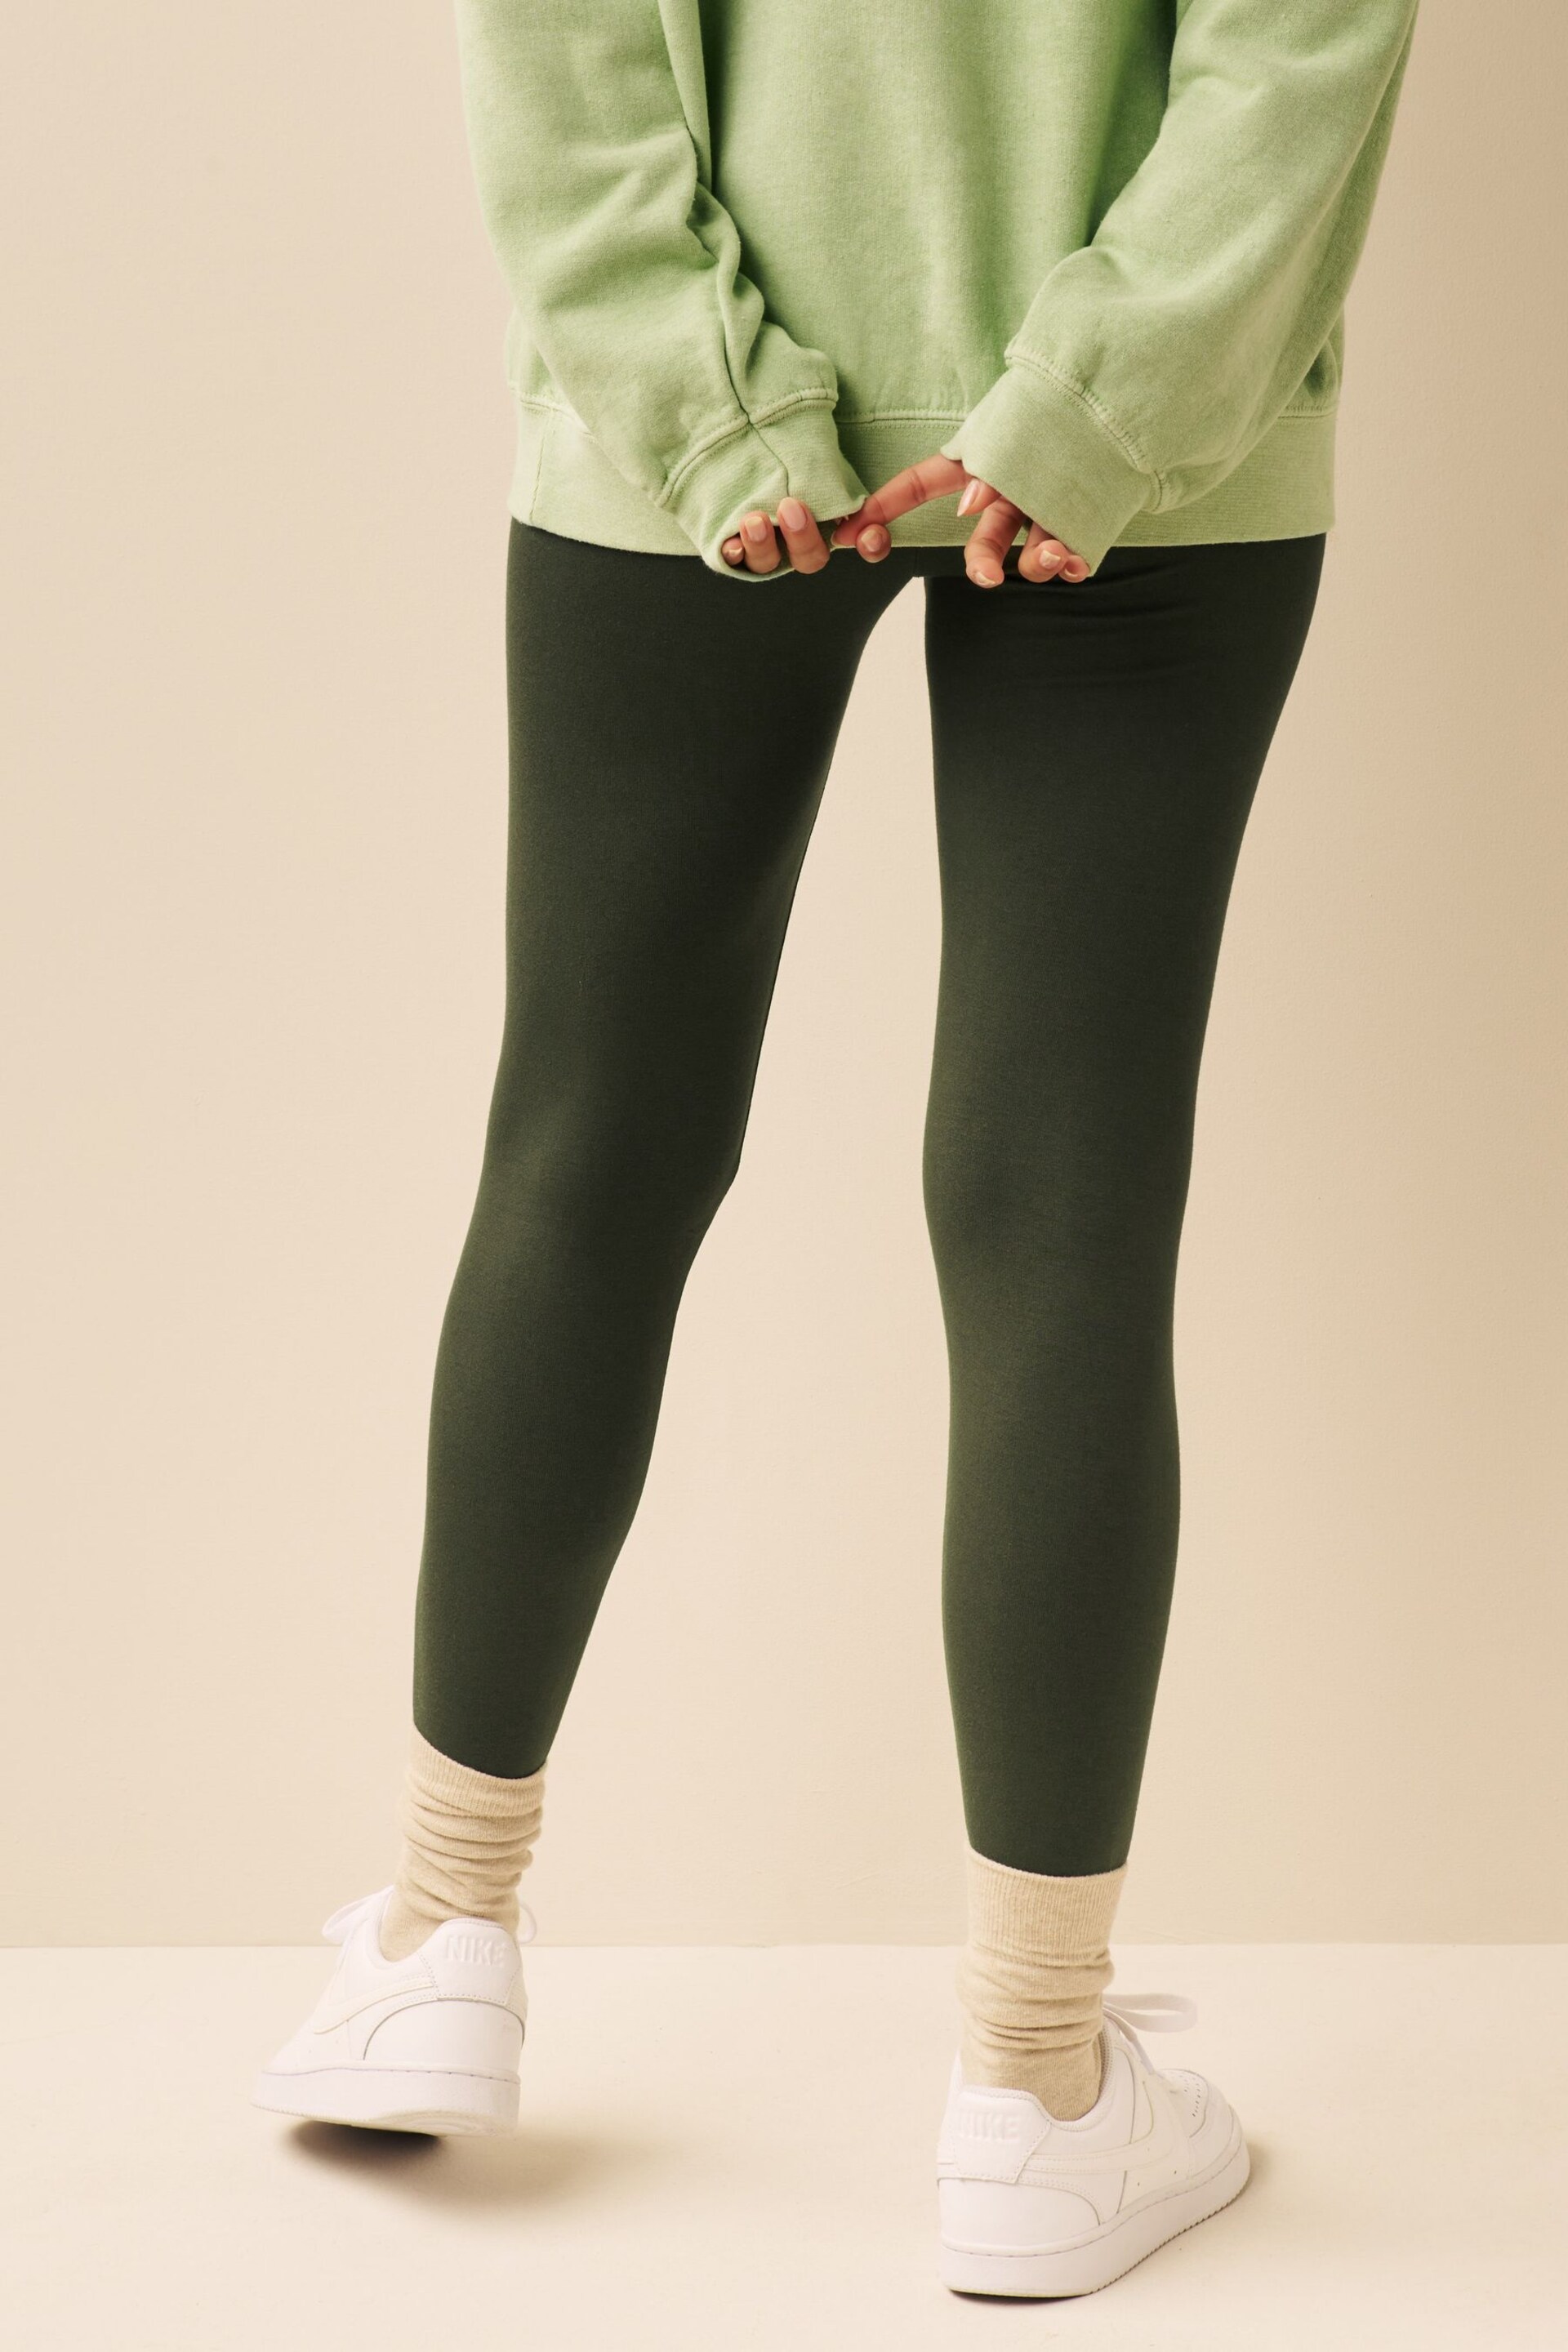 Khaki Green Full Length Leggings - Image 4 of 7